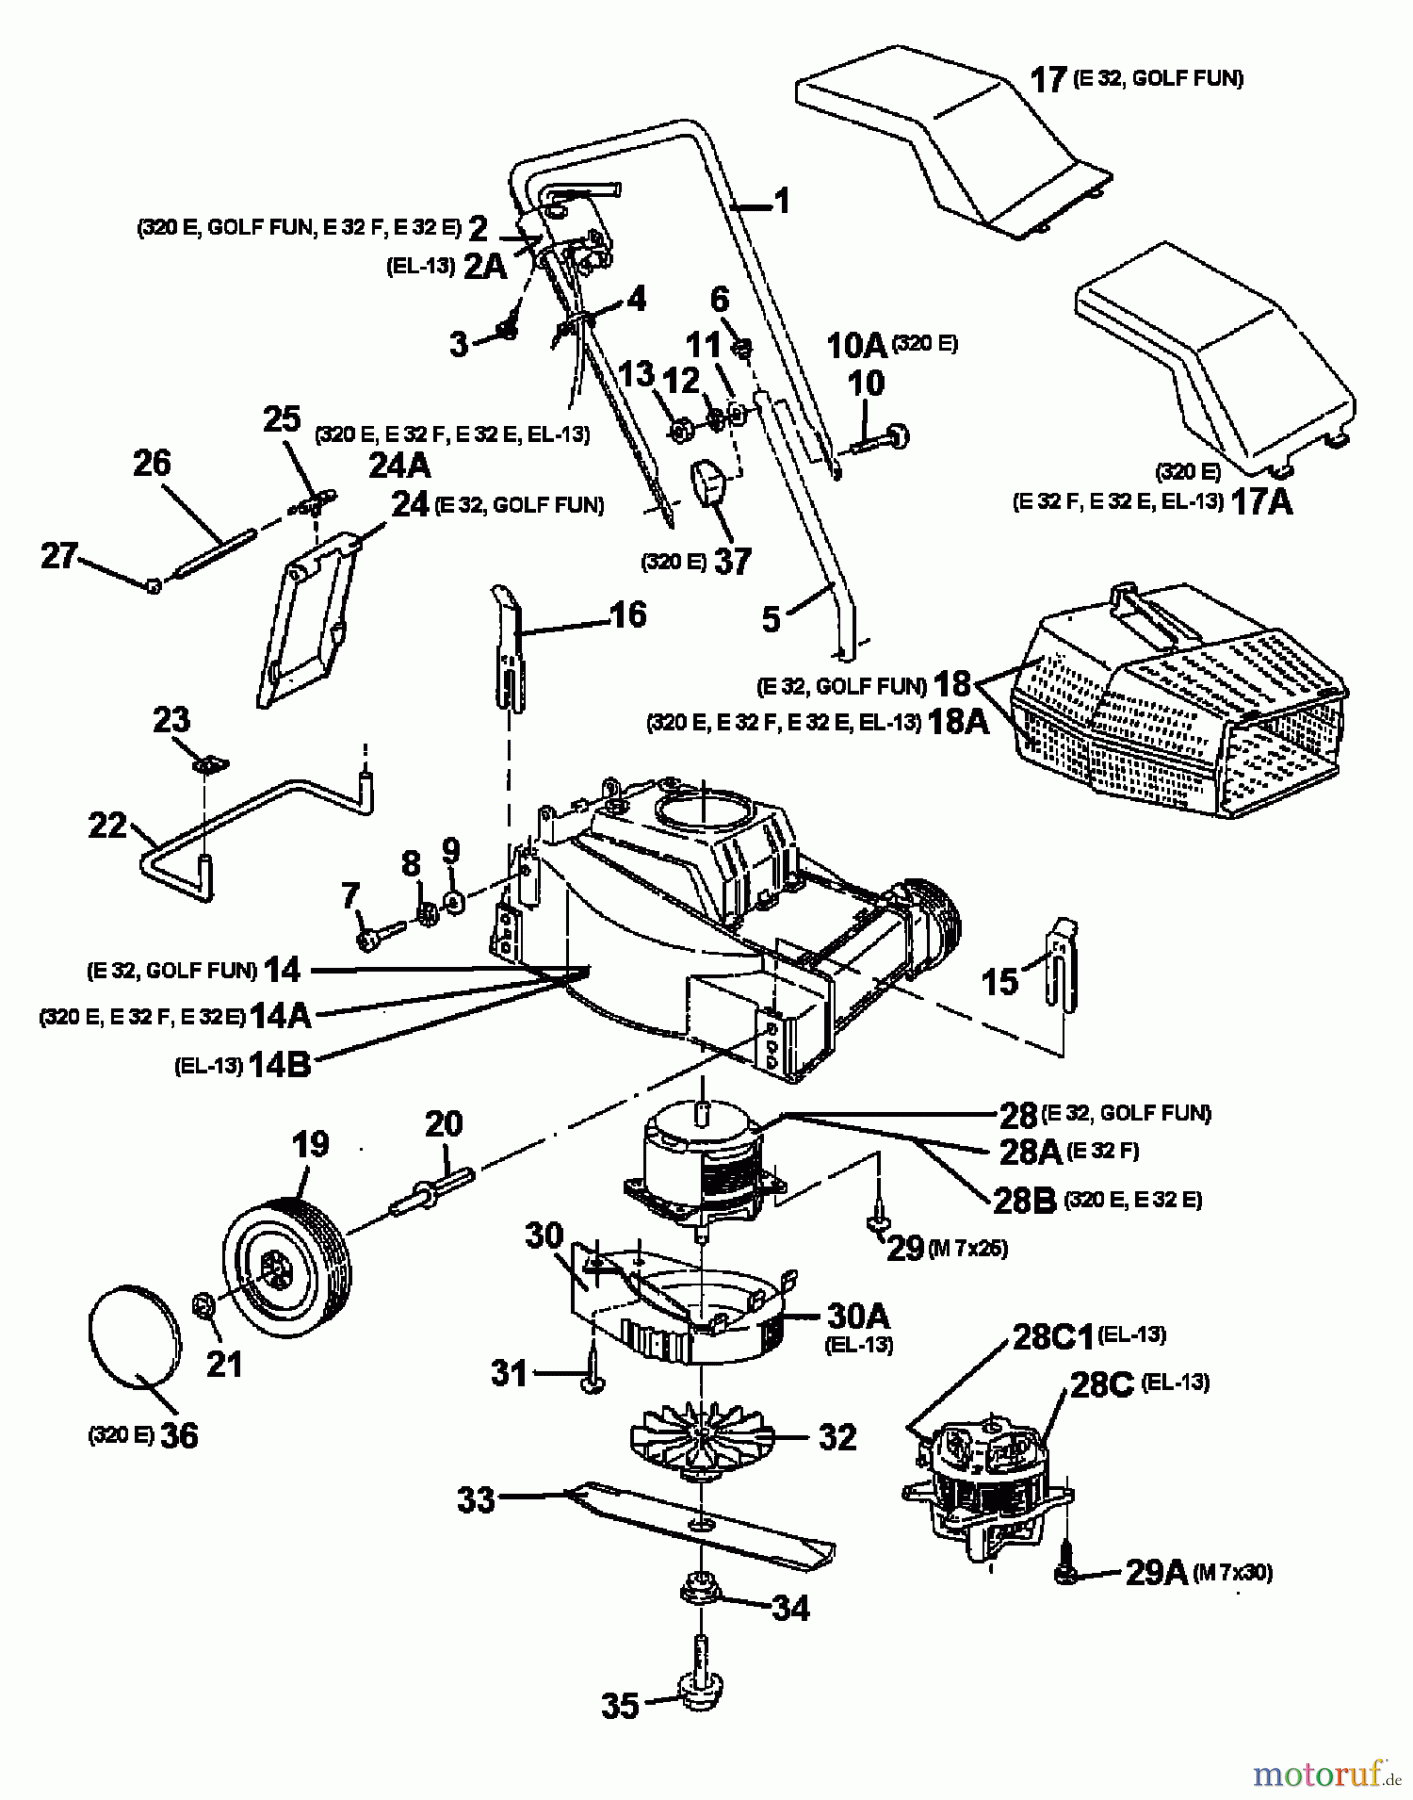  Raiffeisen Electric mower E 32 18A-A0A-628  (1998) Basic machine